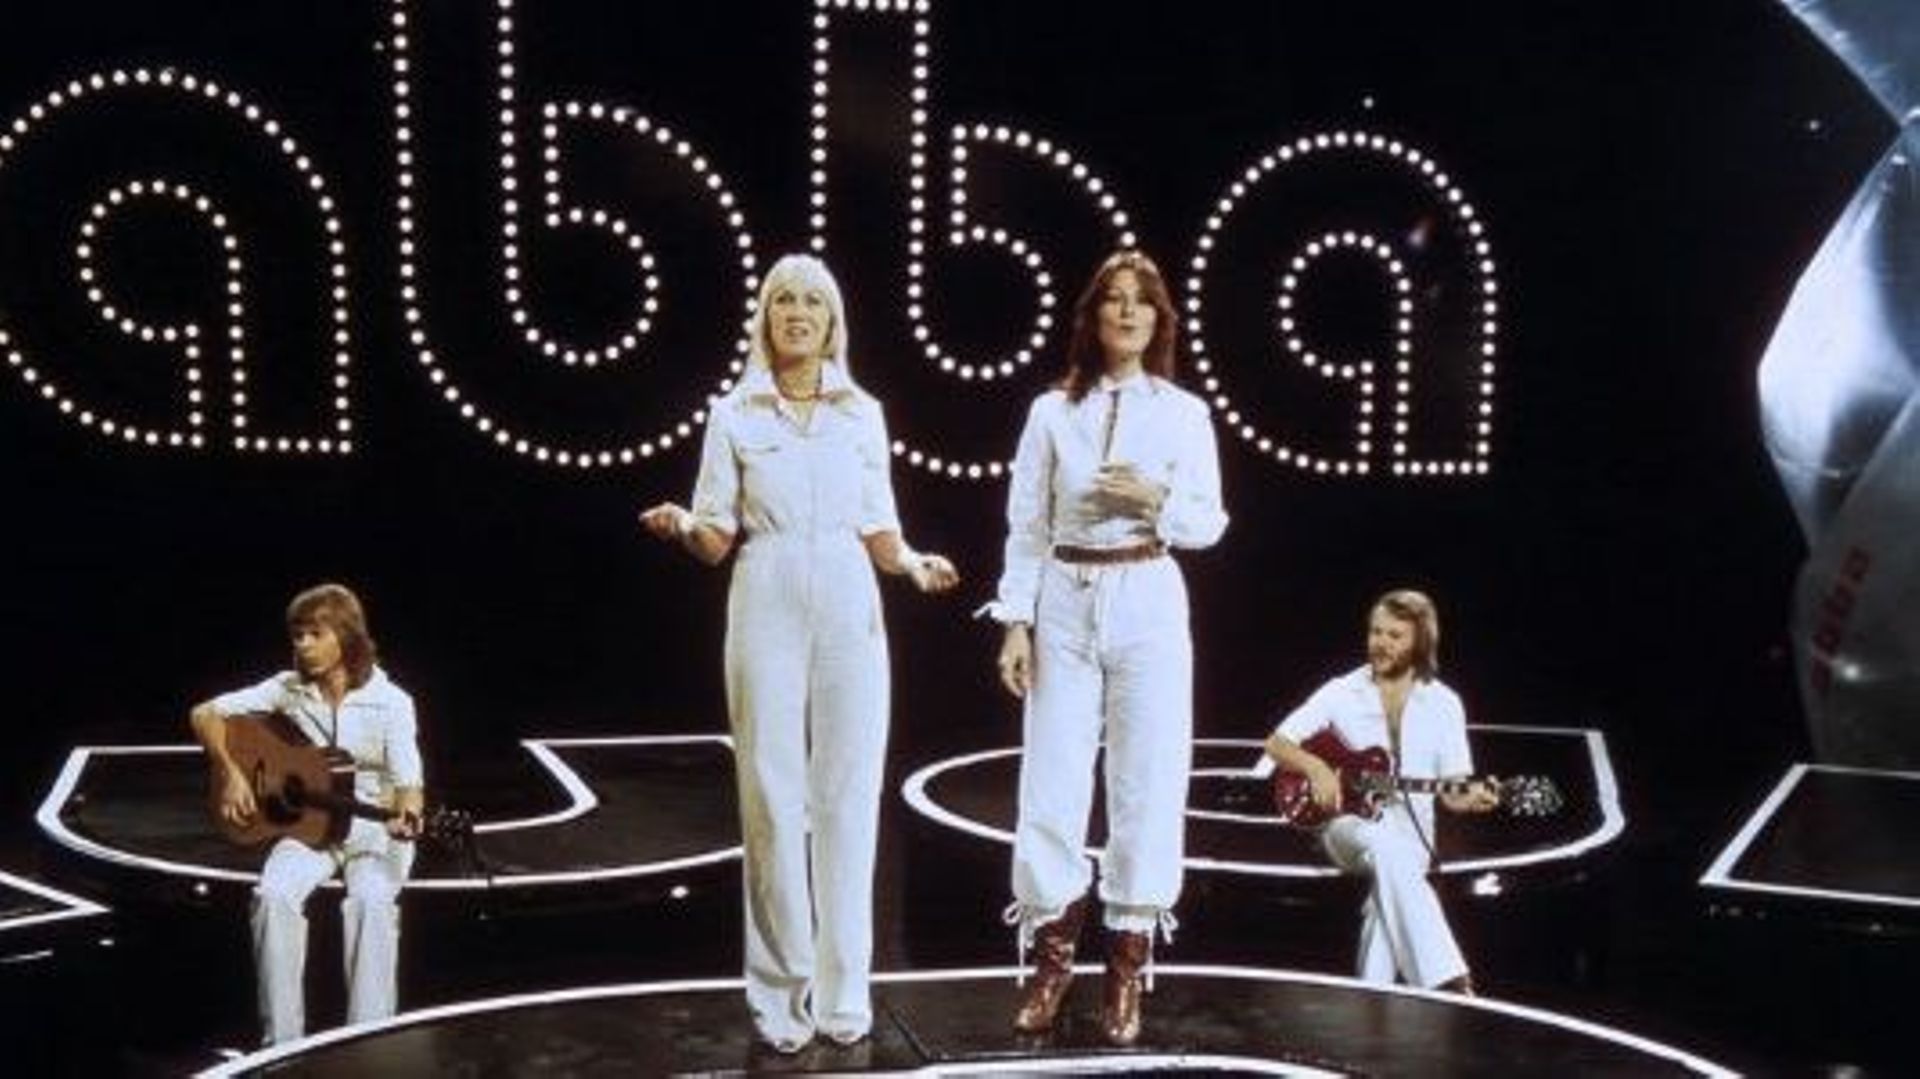 ABBA lance vendredi à Londres une série de concerts d’avatars numériques dernier cri, qui vont "prendre le relais" des quatre septuagénaires du groupe culte suédois.